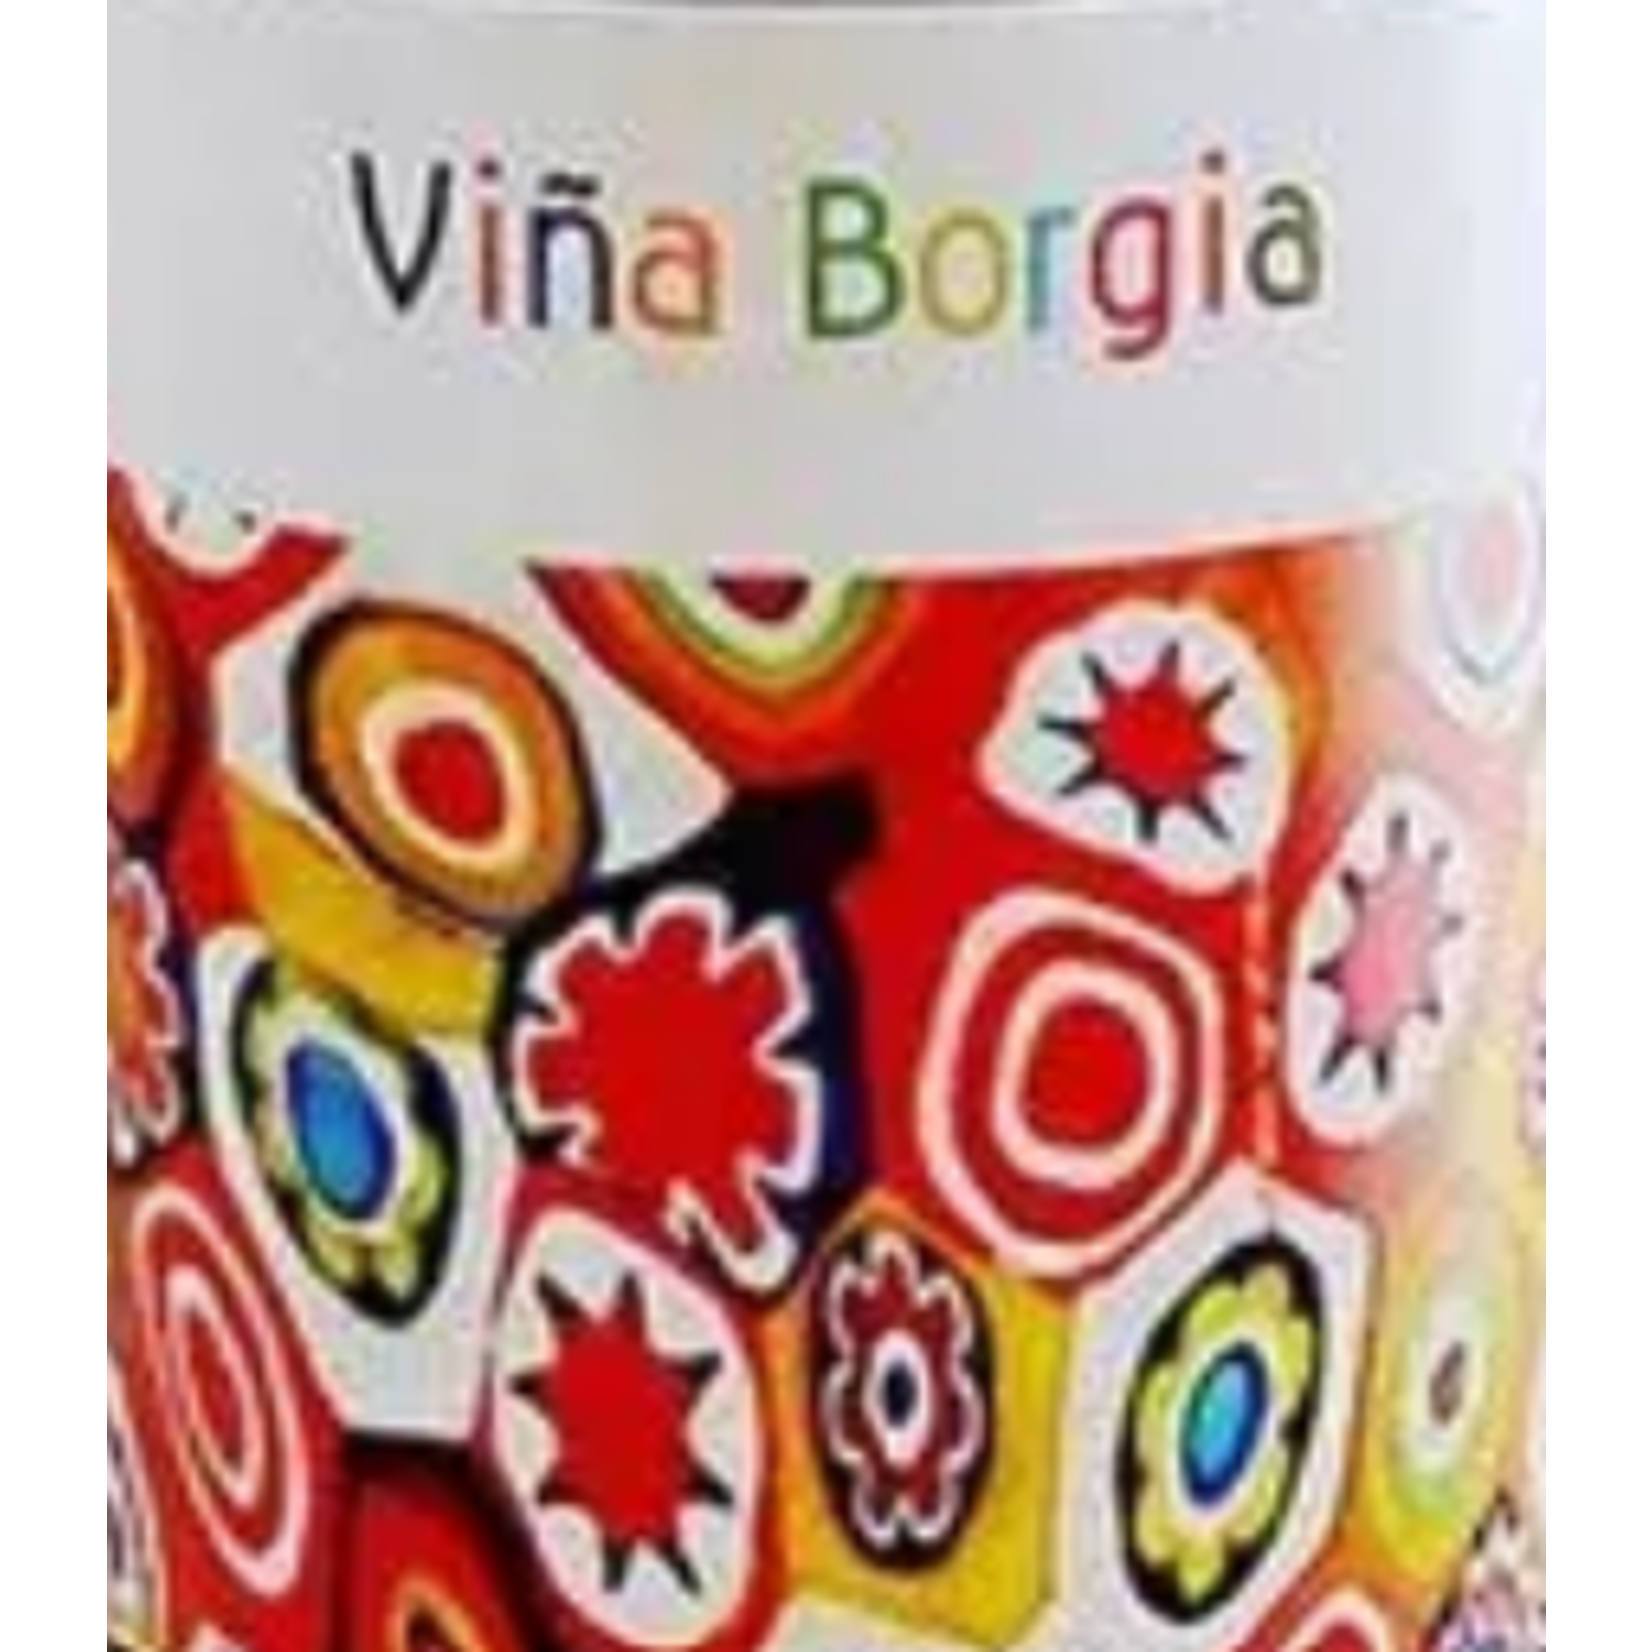 Vina Borgia Garnacha Campo de Borja 2021 3L Spain BIB-Bottle in Box Package